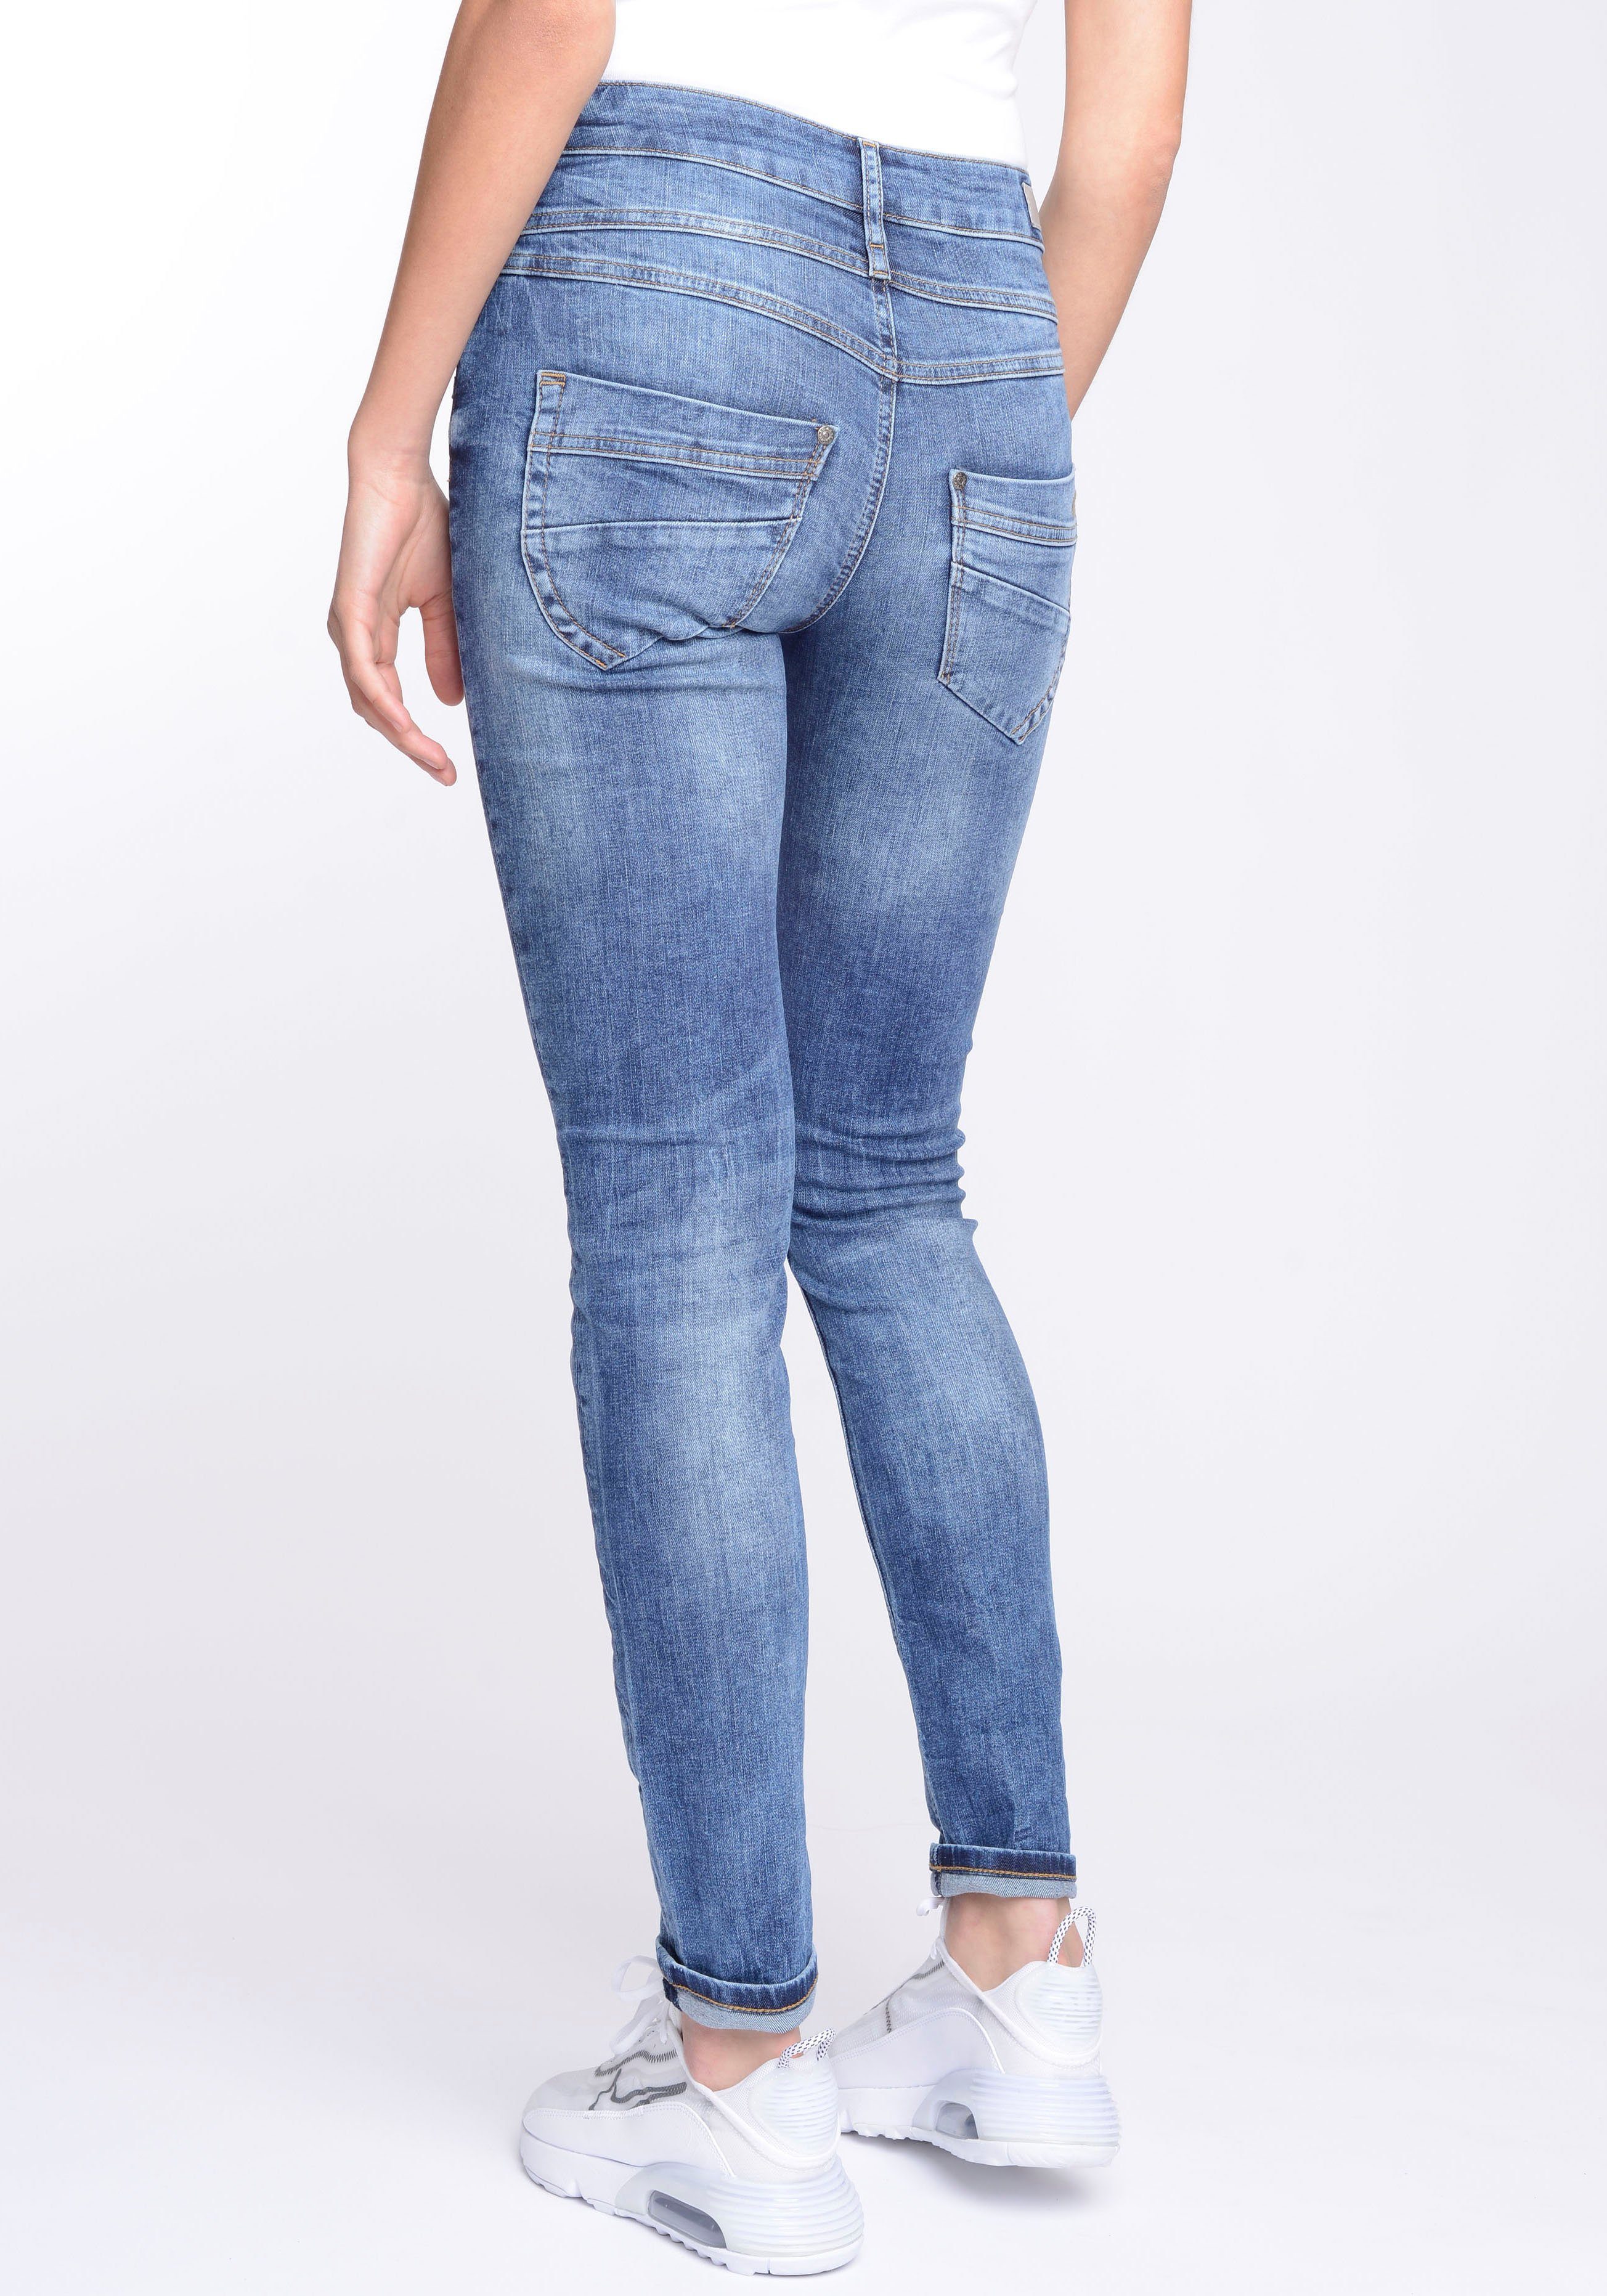 Passe blue) 94MORA mit Skinny-fit-Jeans Midblue 3-Knopf-Verschluss Wash vorne und (mid GANG